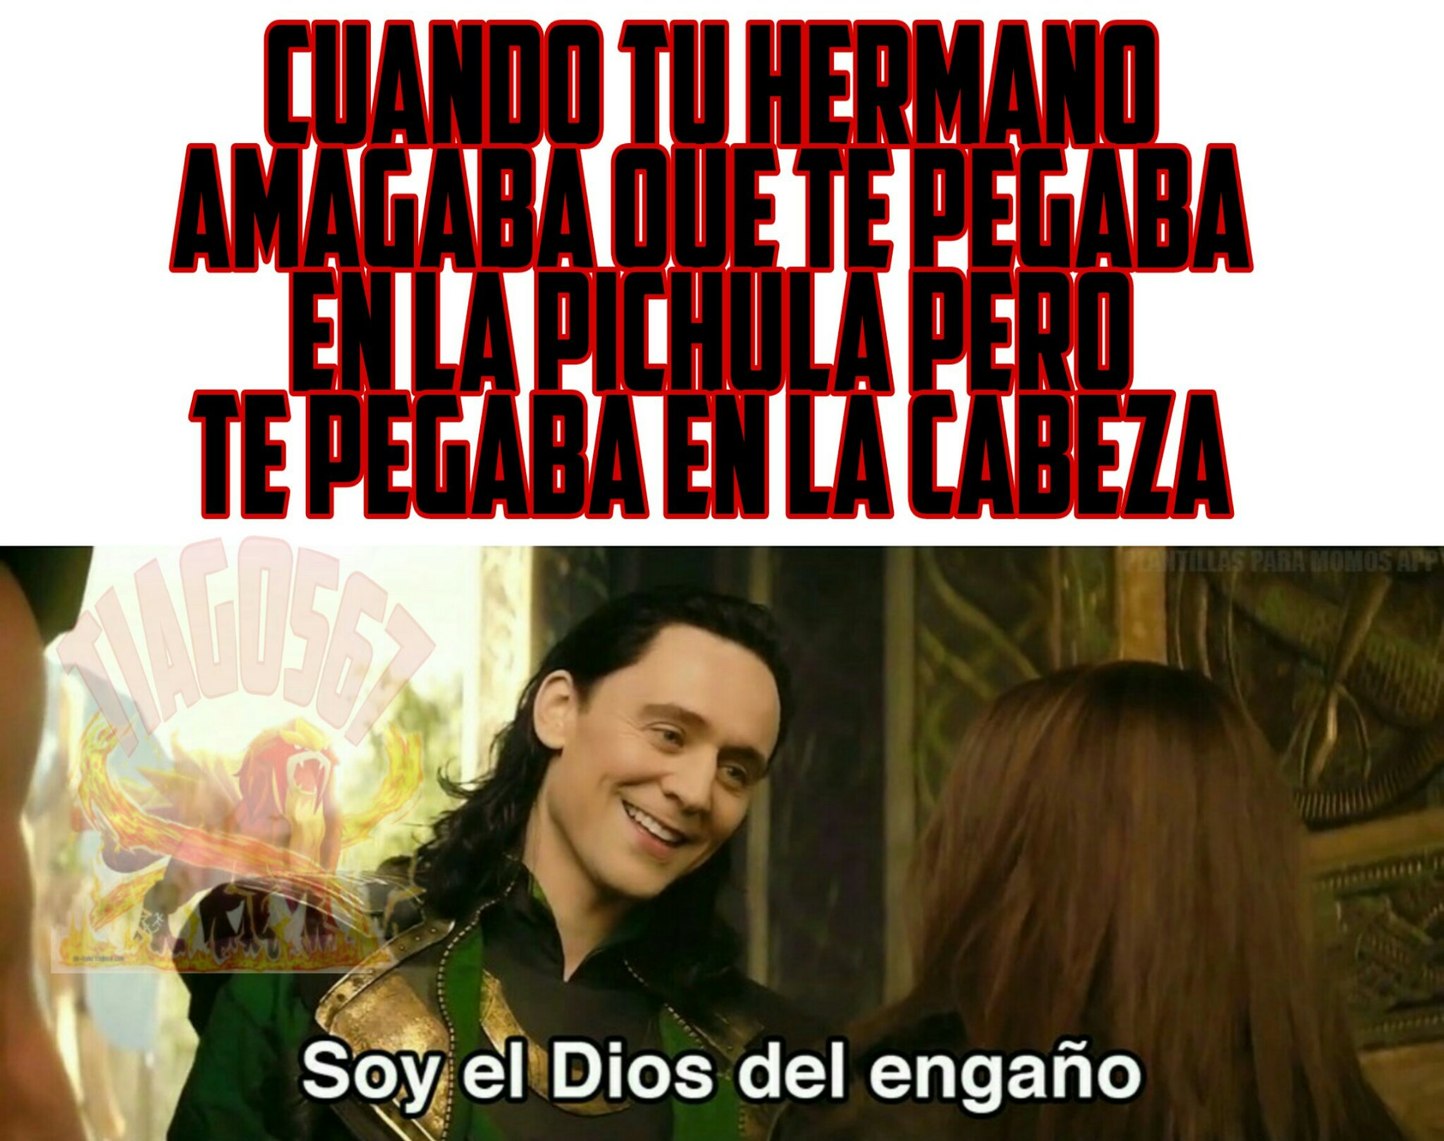 Loki es tu hermano - meme